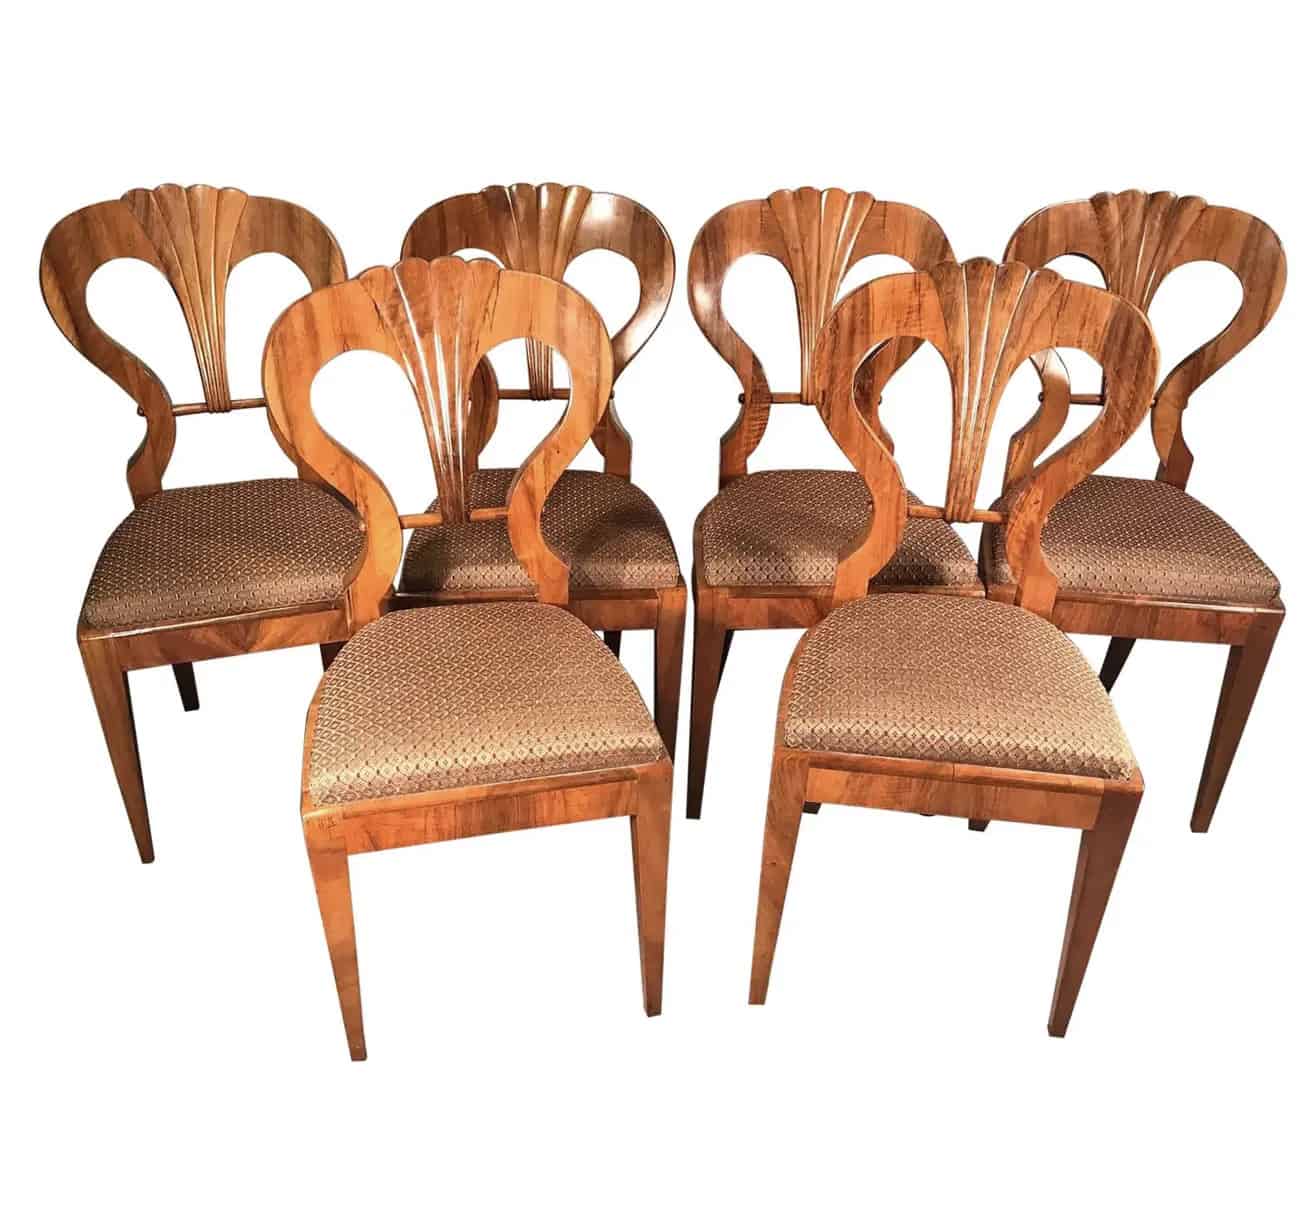 Six Biedermeier walnut chairs- styylish